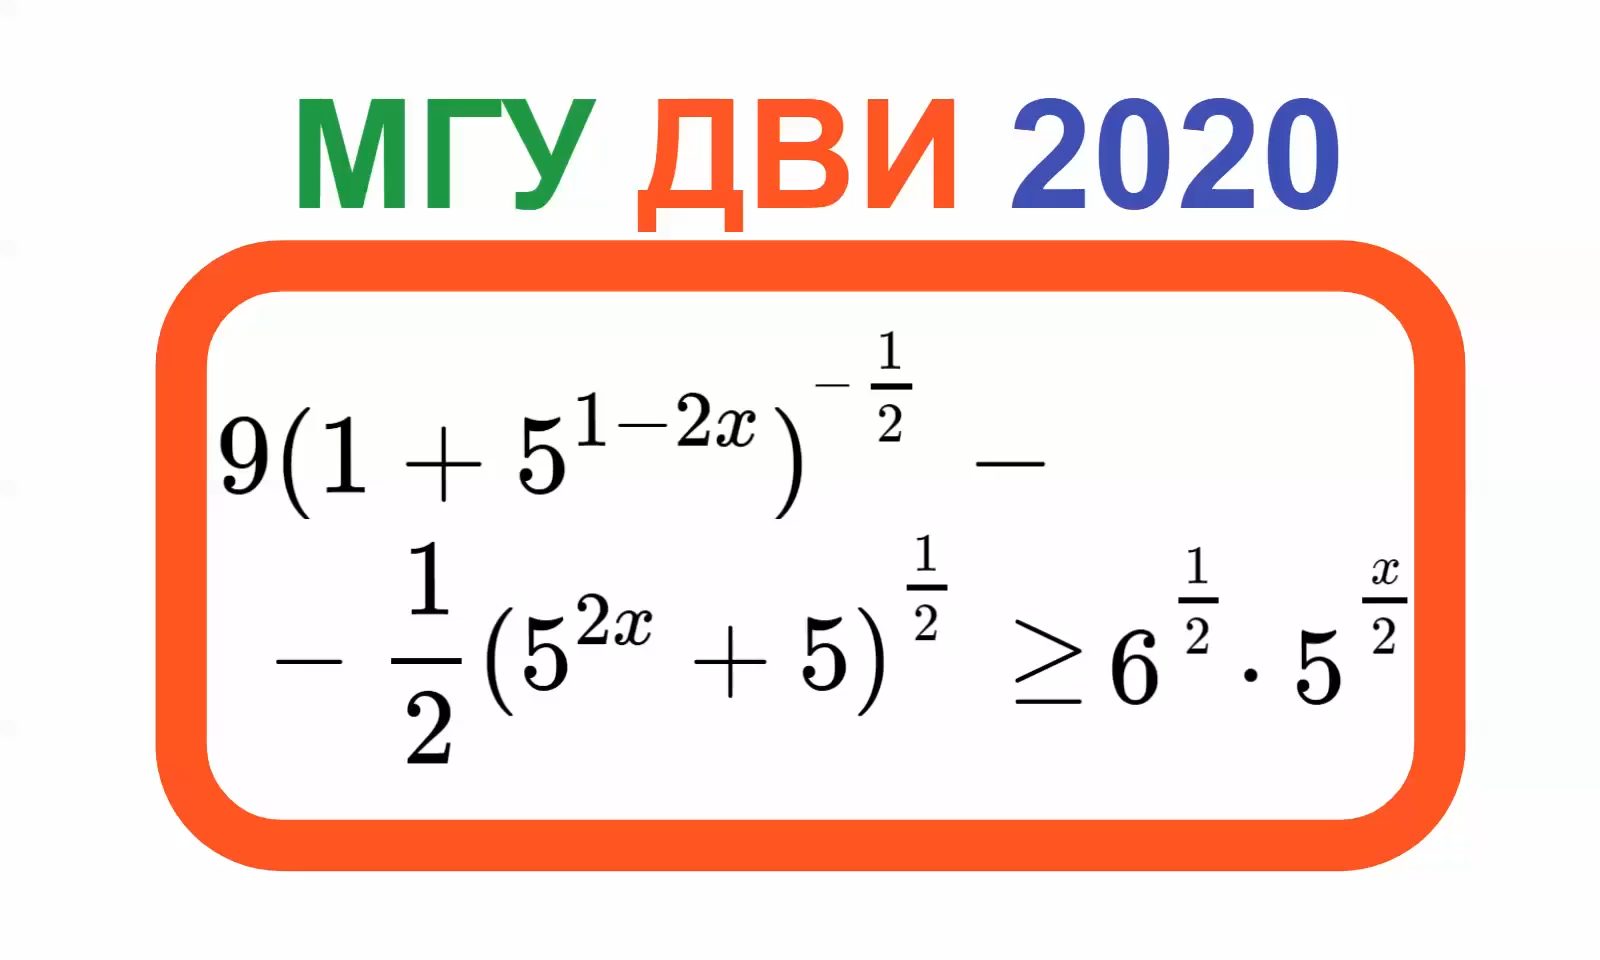 Математика 2020